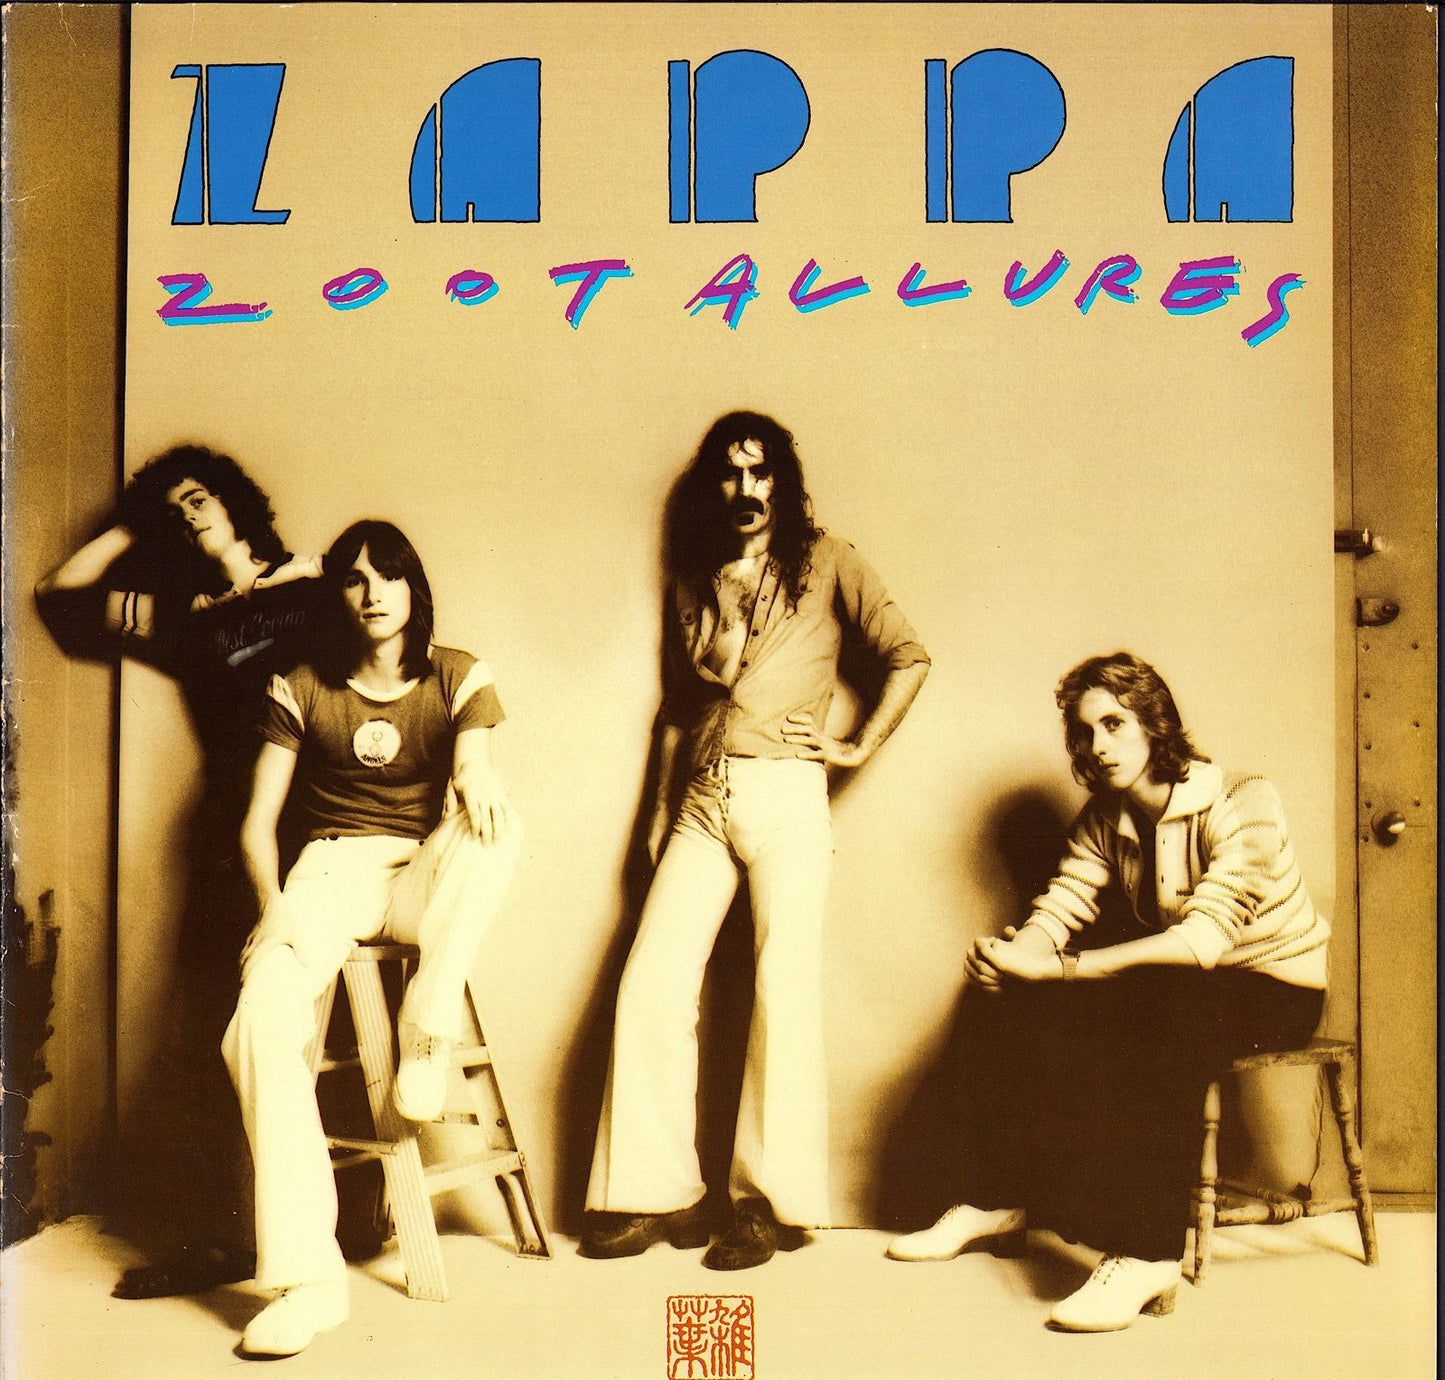 Frank Zappa - Zoot Allures Vinyl LP